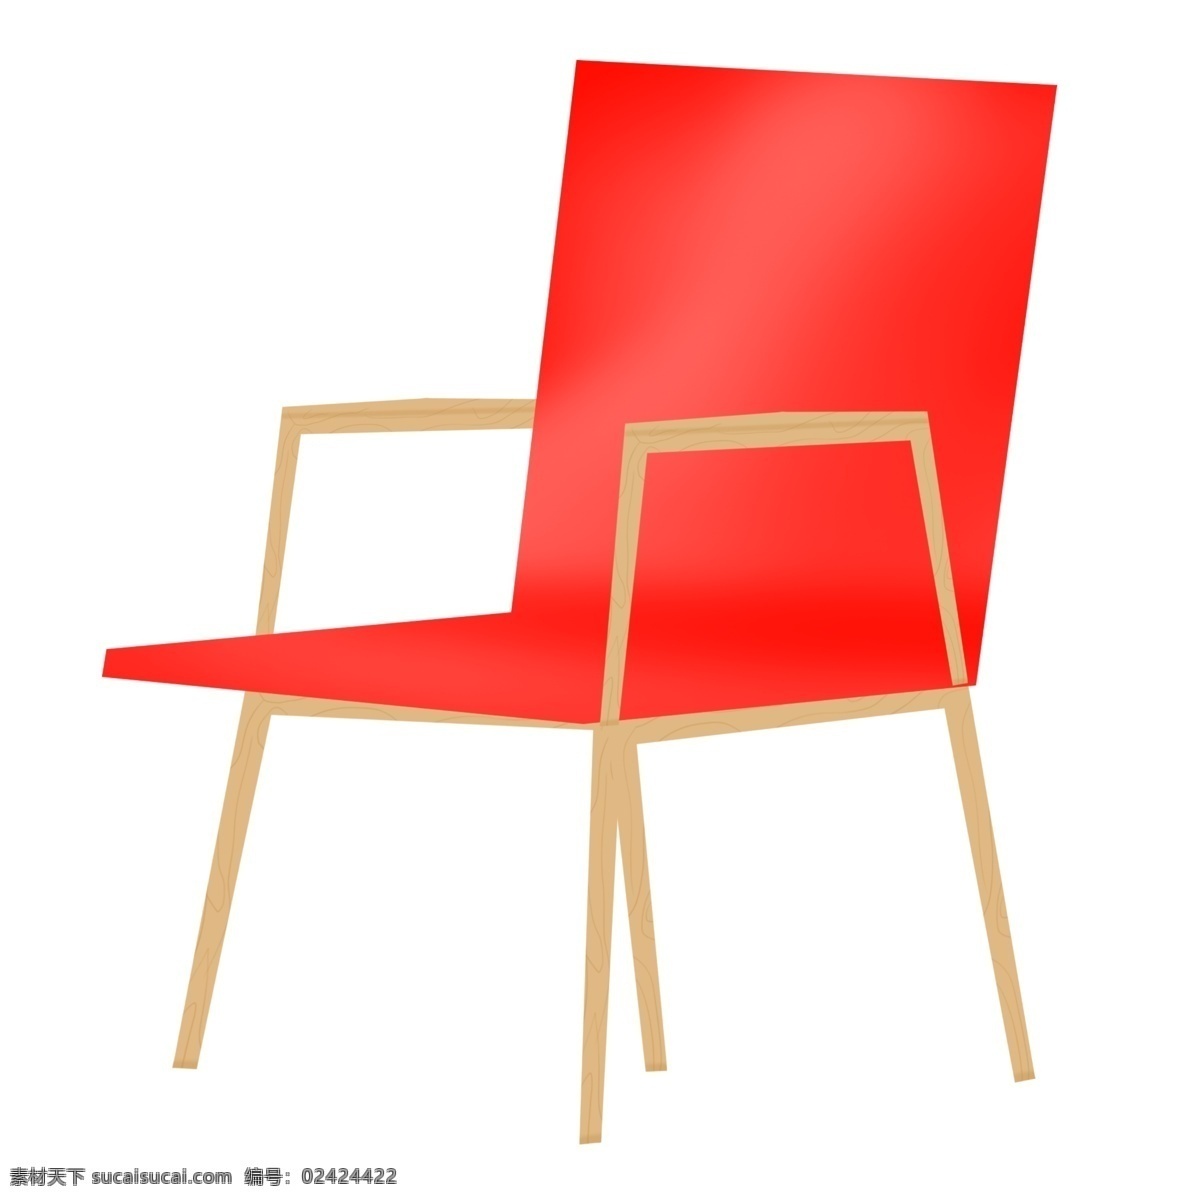 大红色 椅子 装饰 插画 大红色椅子 漂亮的椅子 创意椅子 立体椅子 精美椅子 卡通椅子 椅子装饰